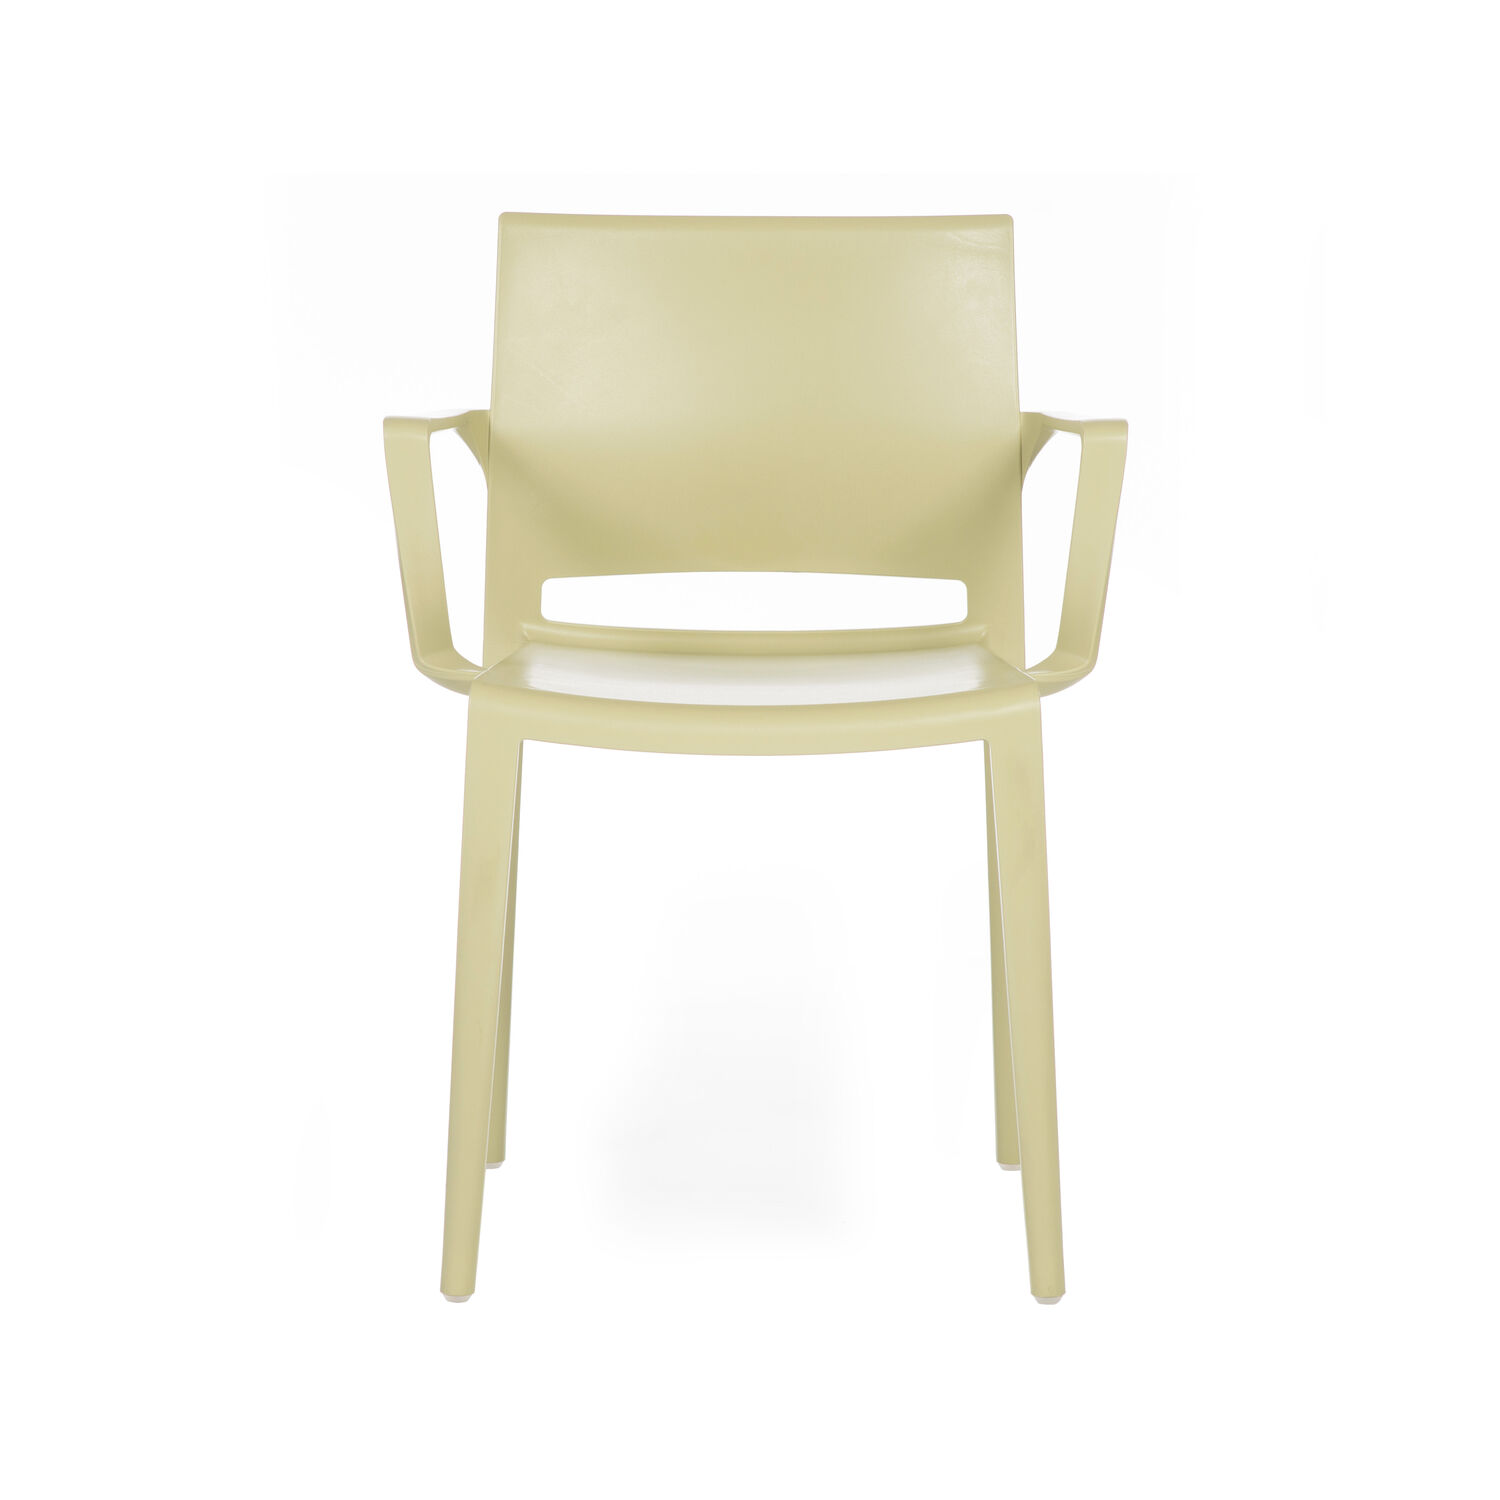 Hita Chair Arms (1)